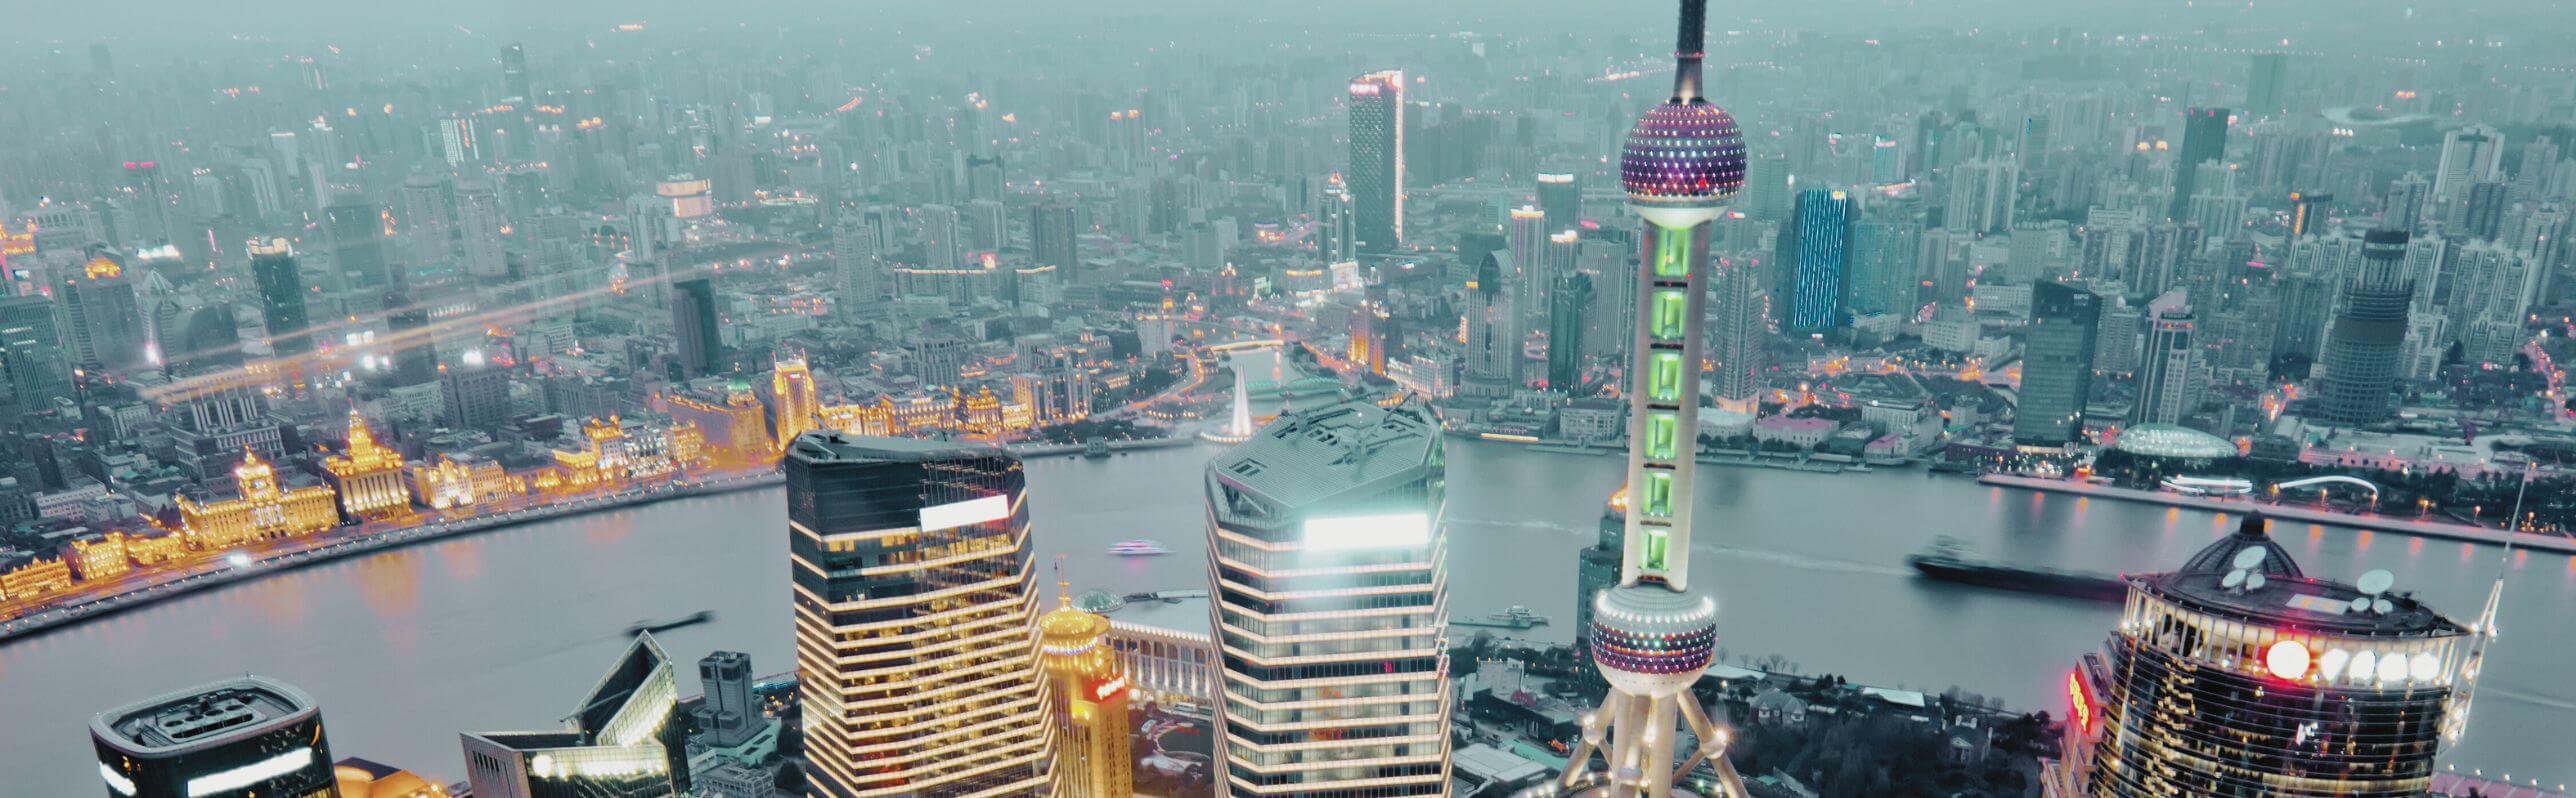 Shanghai Bund Symbolbild 